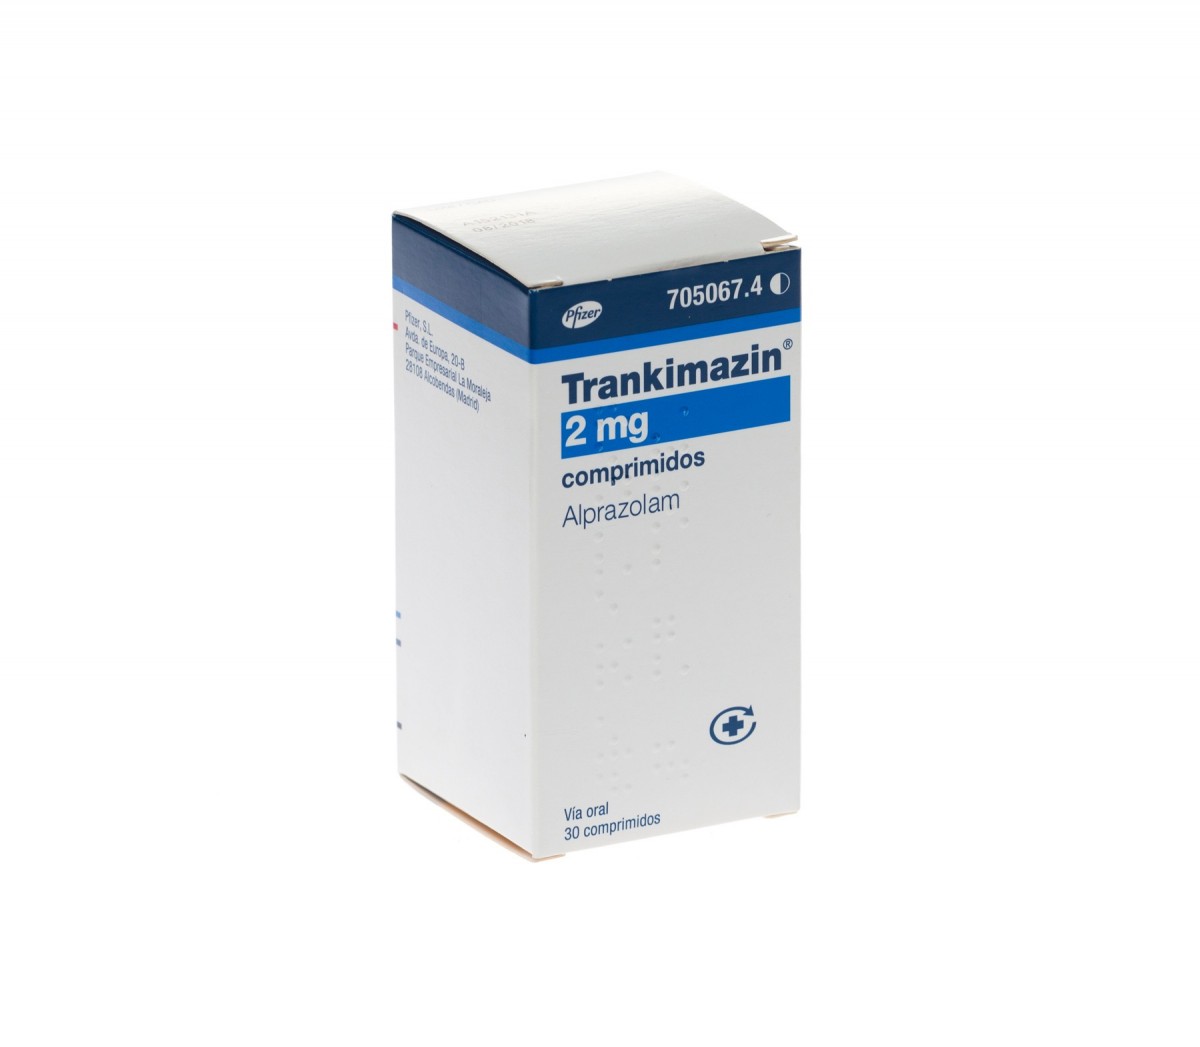 TRANKIMAZIN 2 mg COMPRIMIDOS , 30 comprimidos  fotografía del envase.